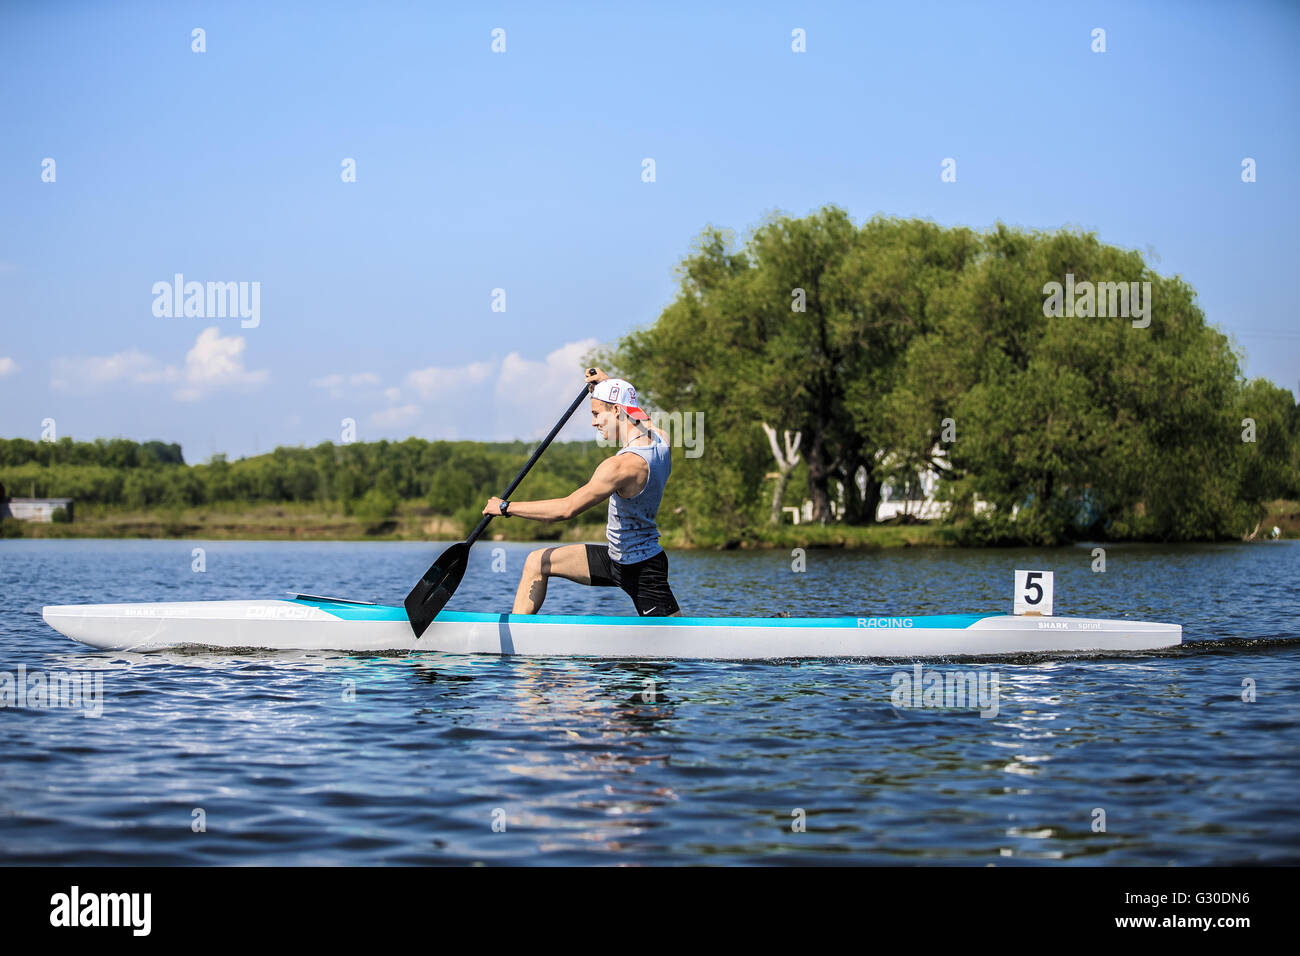 muskulöse Sportler in einem Kanu, Rudern, während Ural Meisterschaft im Rudern Stockfoto